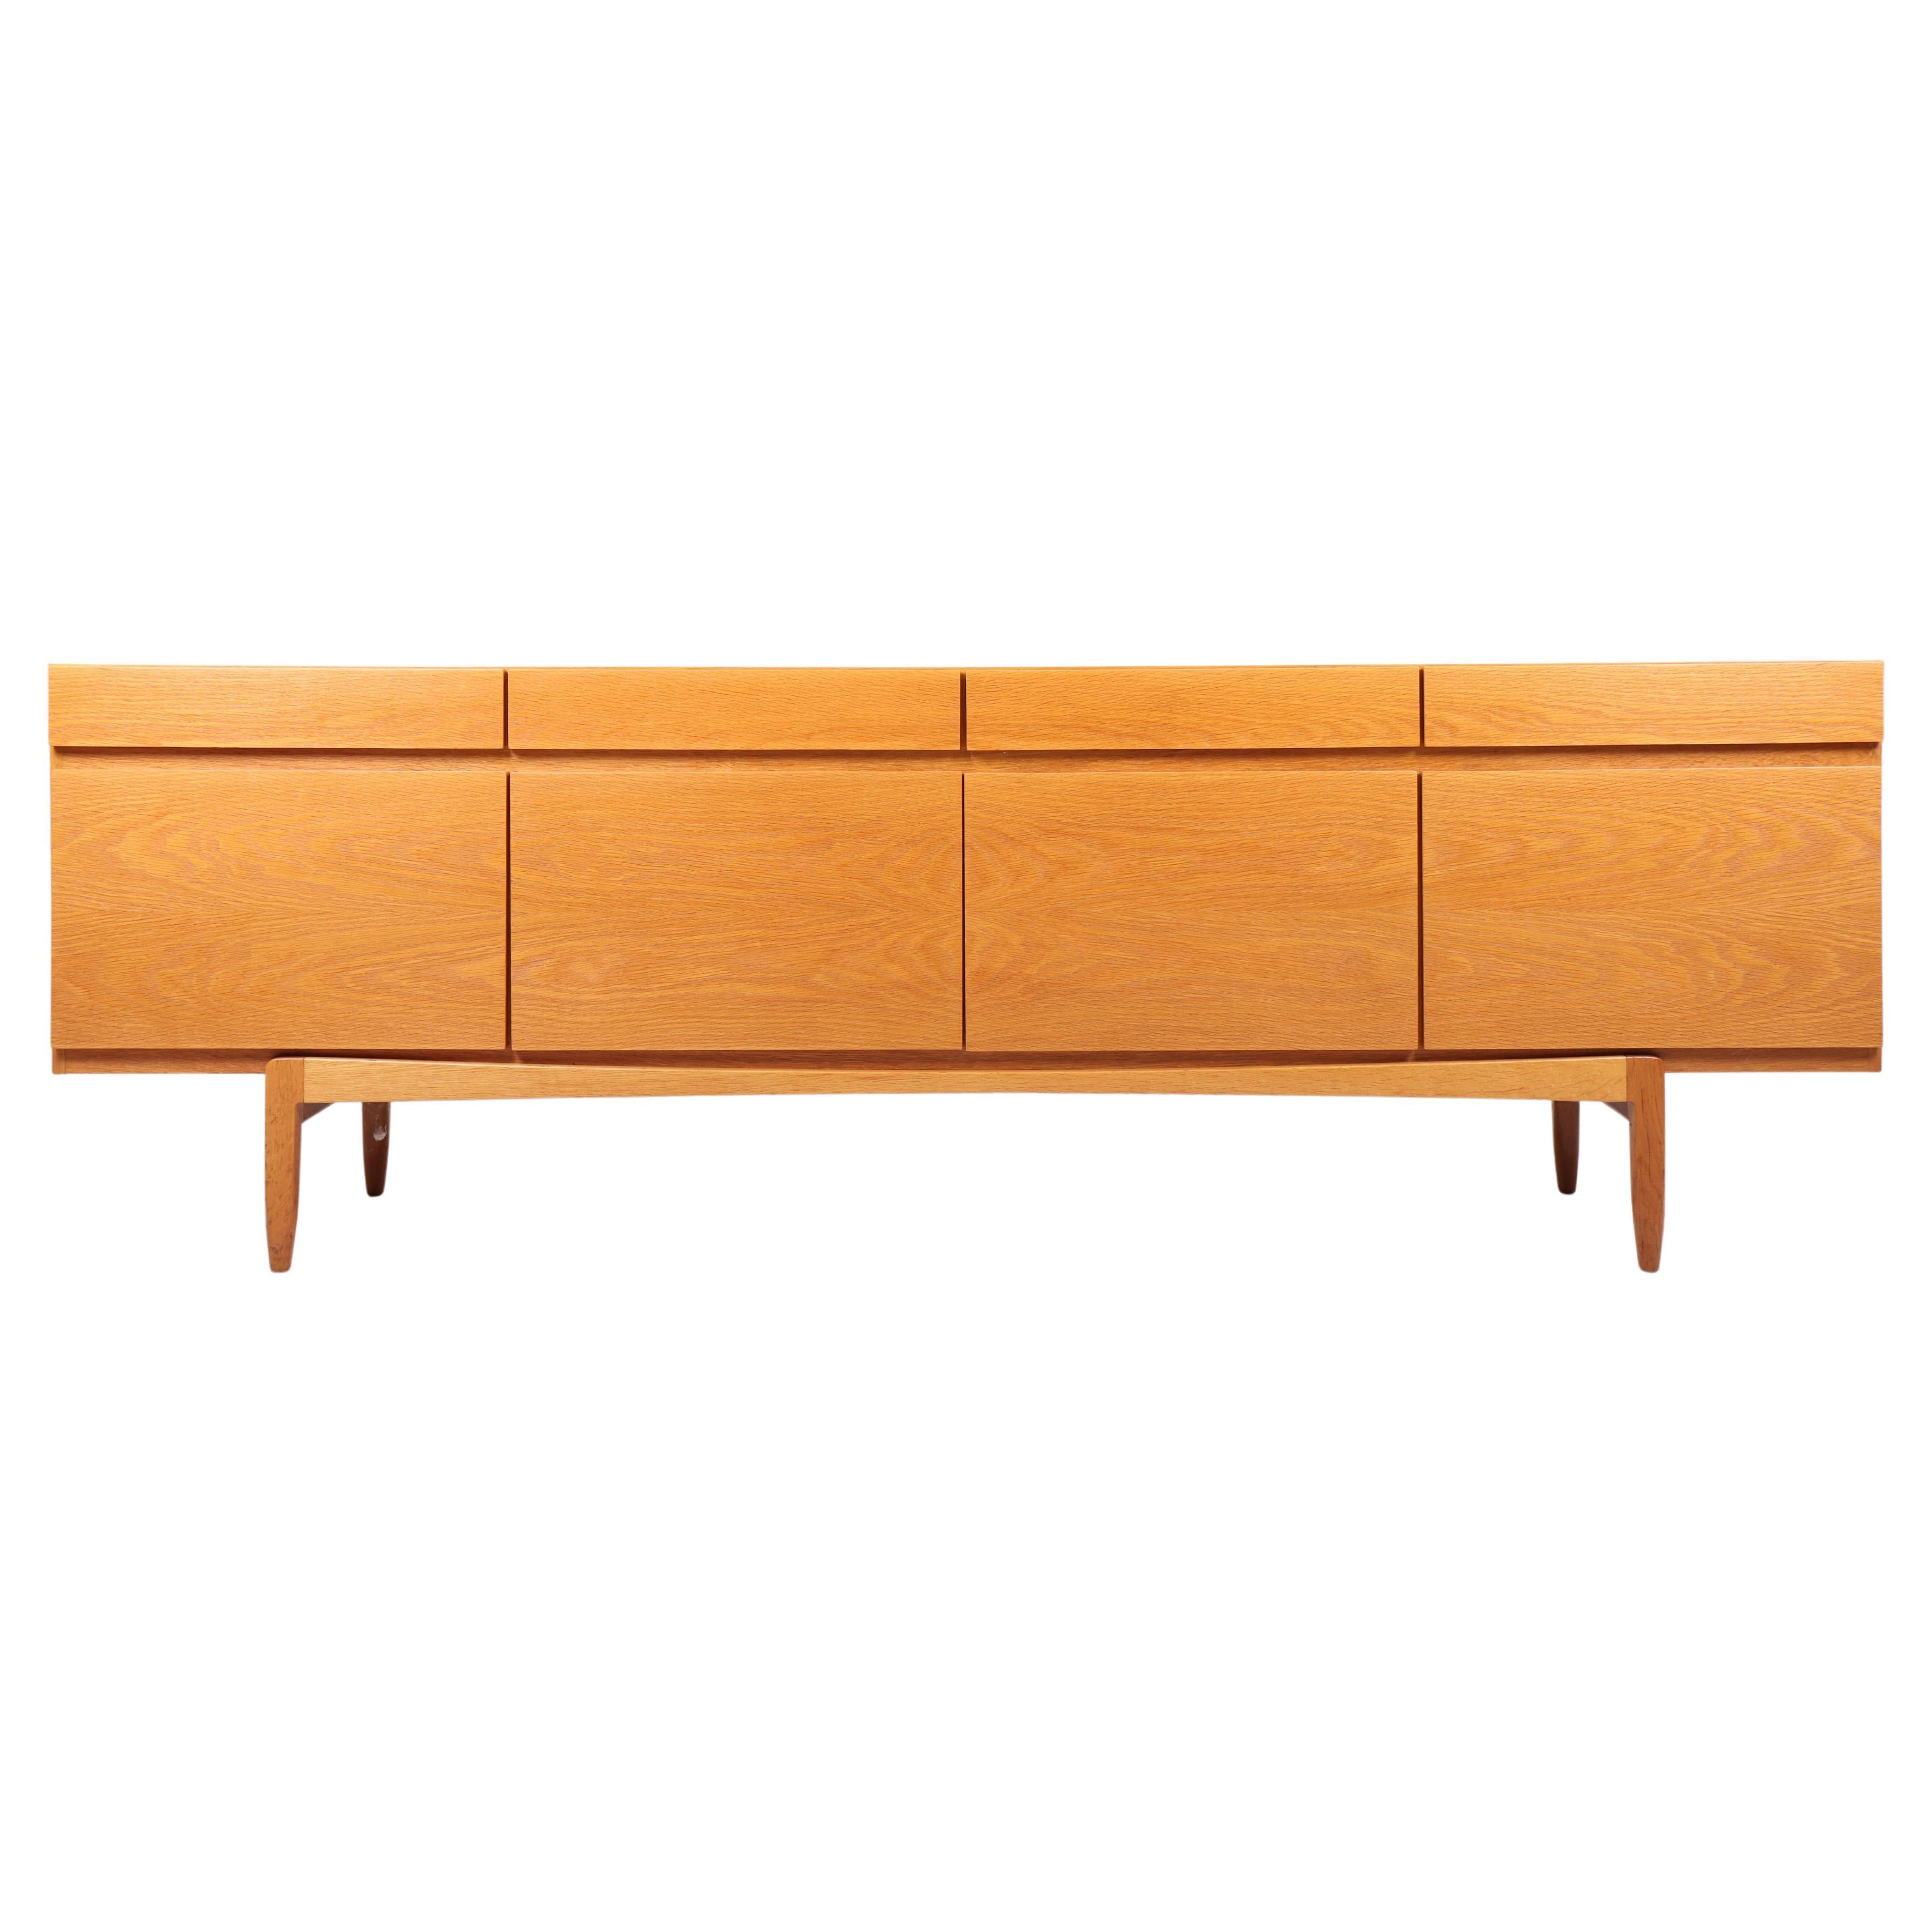 Danish Midcentury Sideboard in Oak Designed by Ib Kofod-Larsen, 1960s